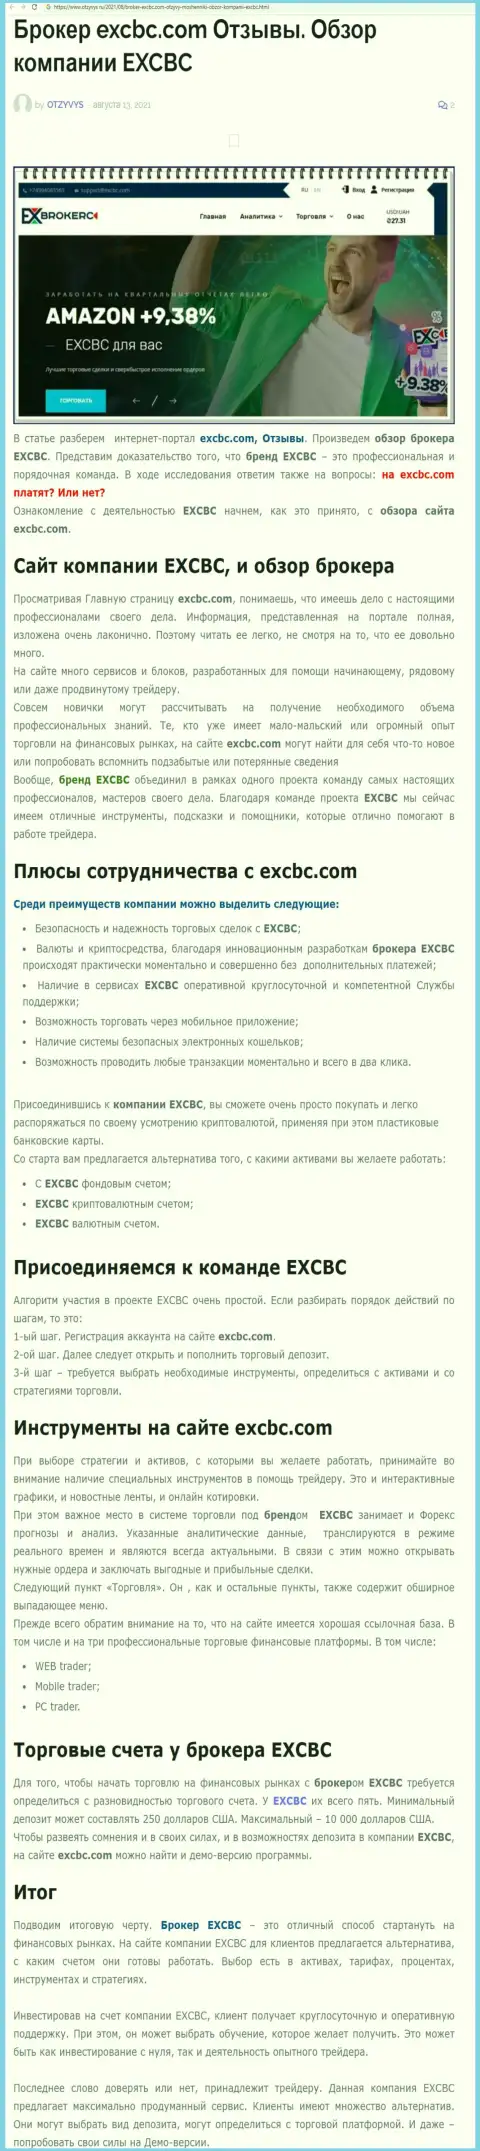 Обзорный материал о ФОРЕКС брокерской компании ЕХ Брокерс на онлайн-ресурсе otzyvys ru